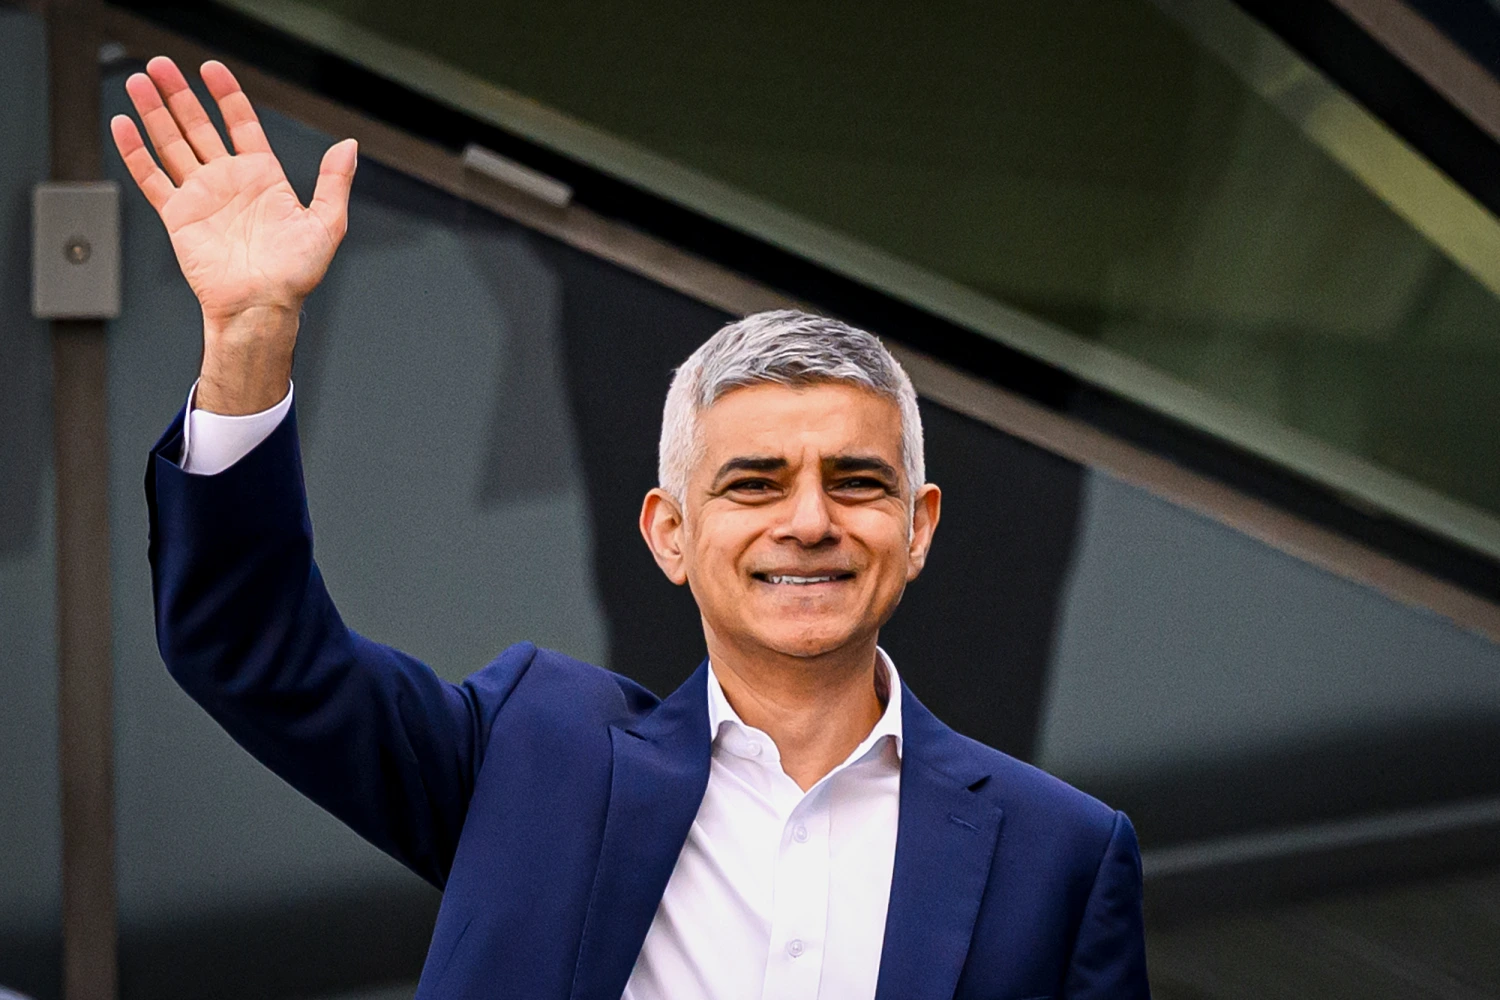 Zgjedhjet për kryebashkiak të Londrës/ Sadiq Khan fiton mandatin e tretë historik